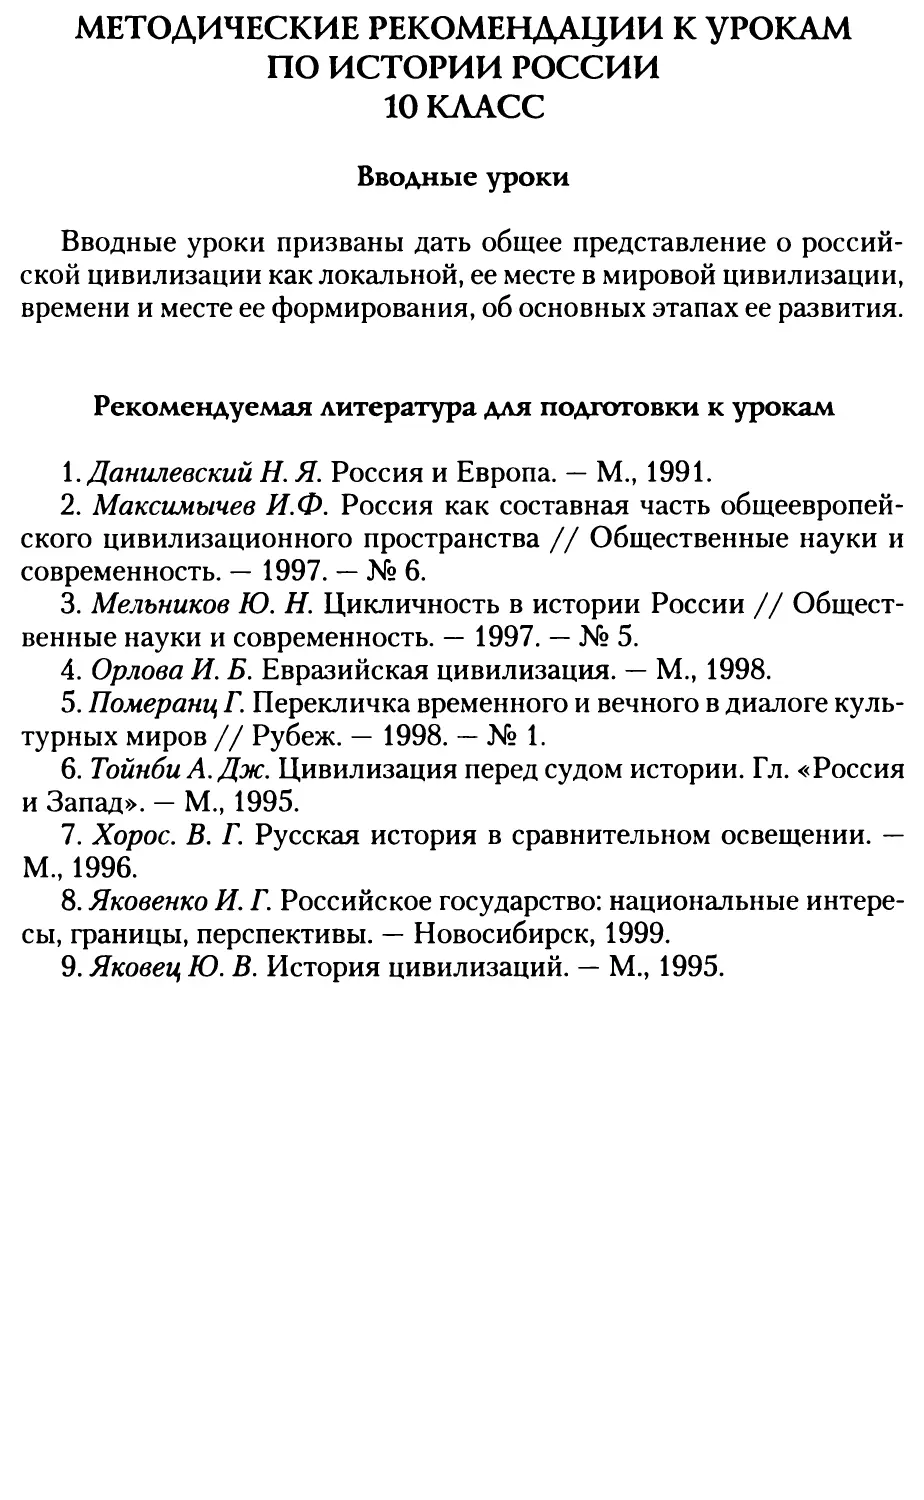 Методические рекомендации к урокам по истории России. 10 класс